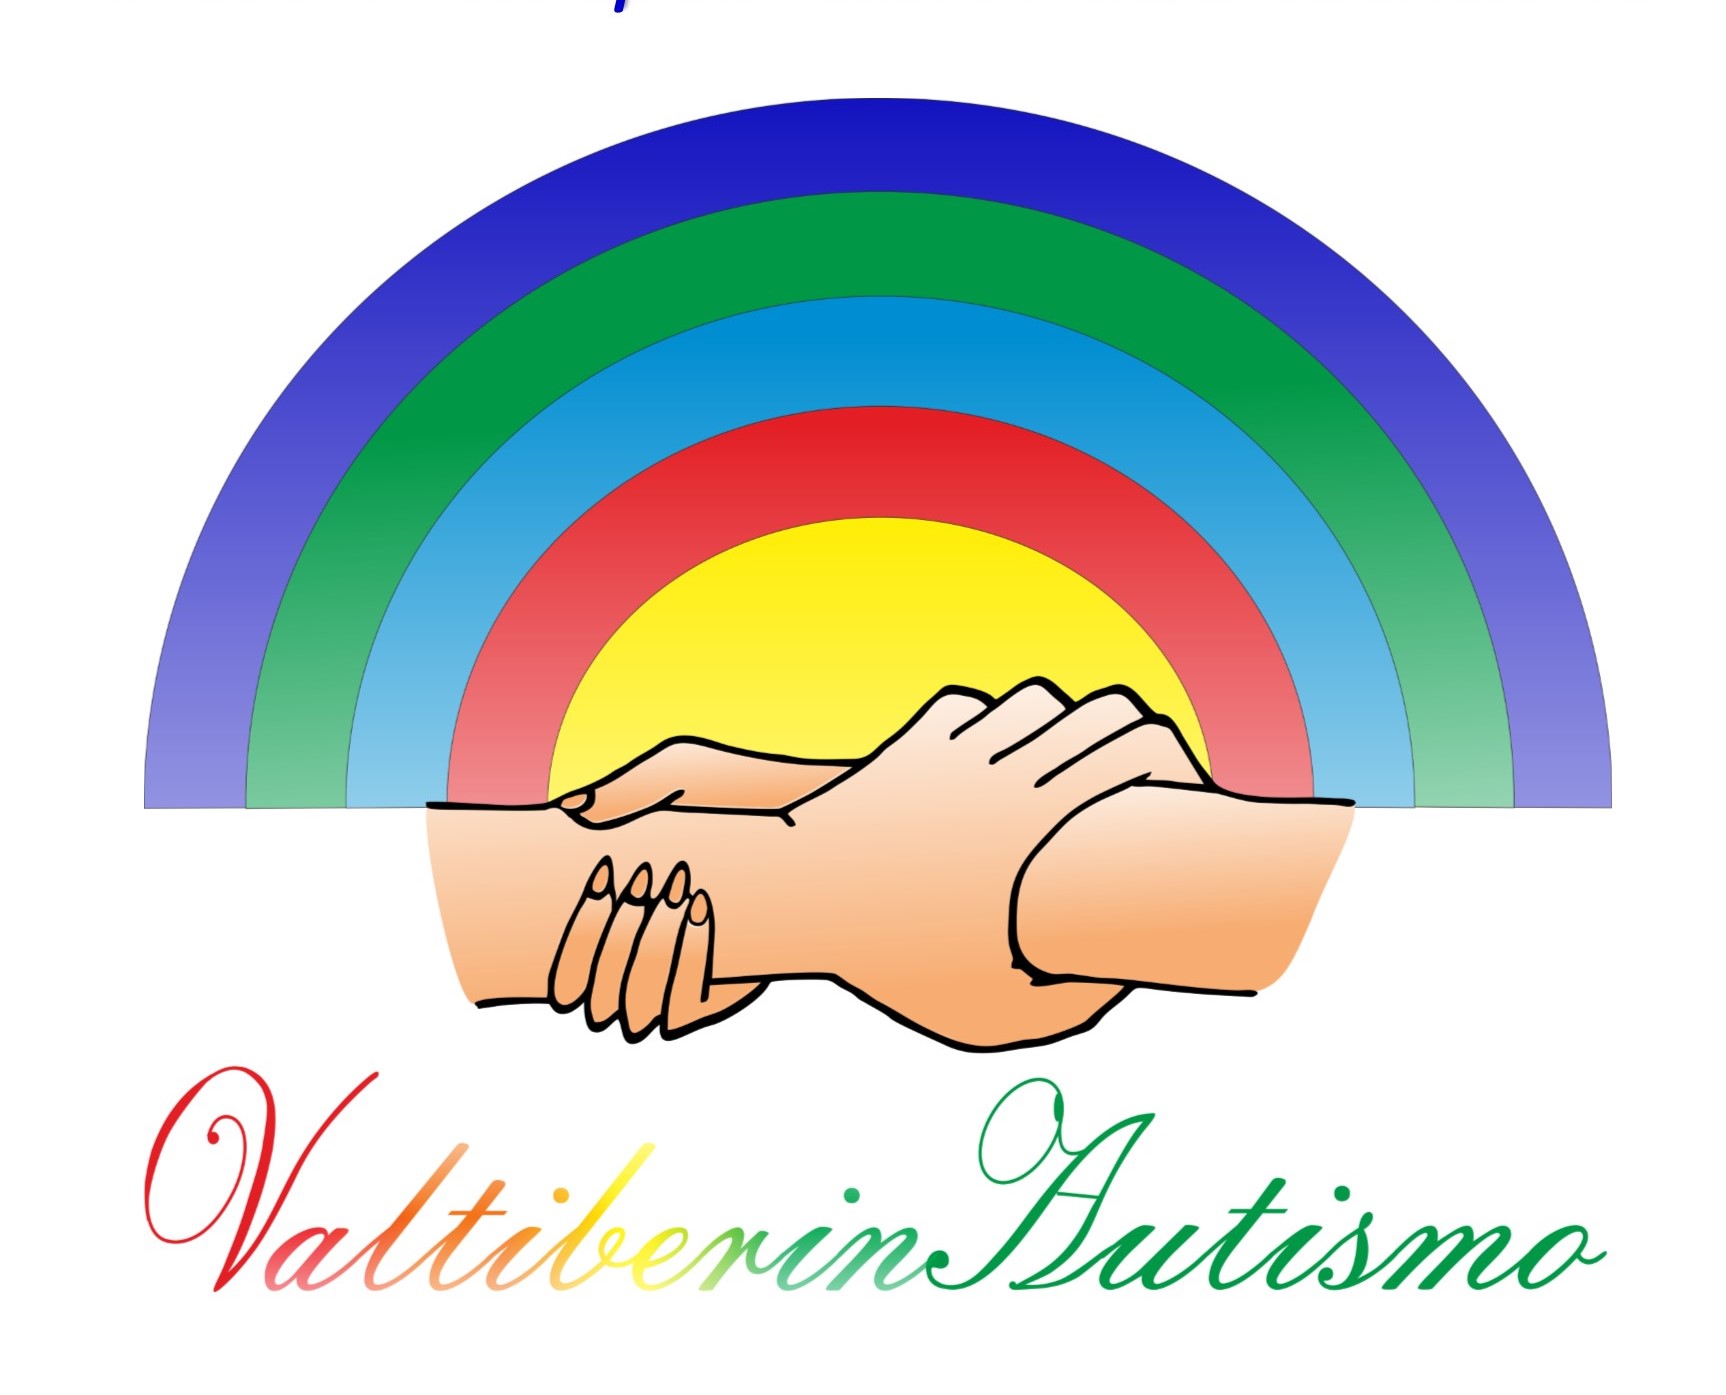 L’Associazione Valtiberinautismo aderisce alla raccolta fondi a favore del territorio della Valtiberina